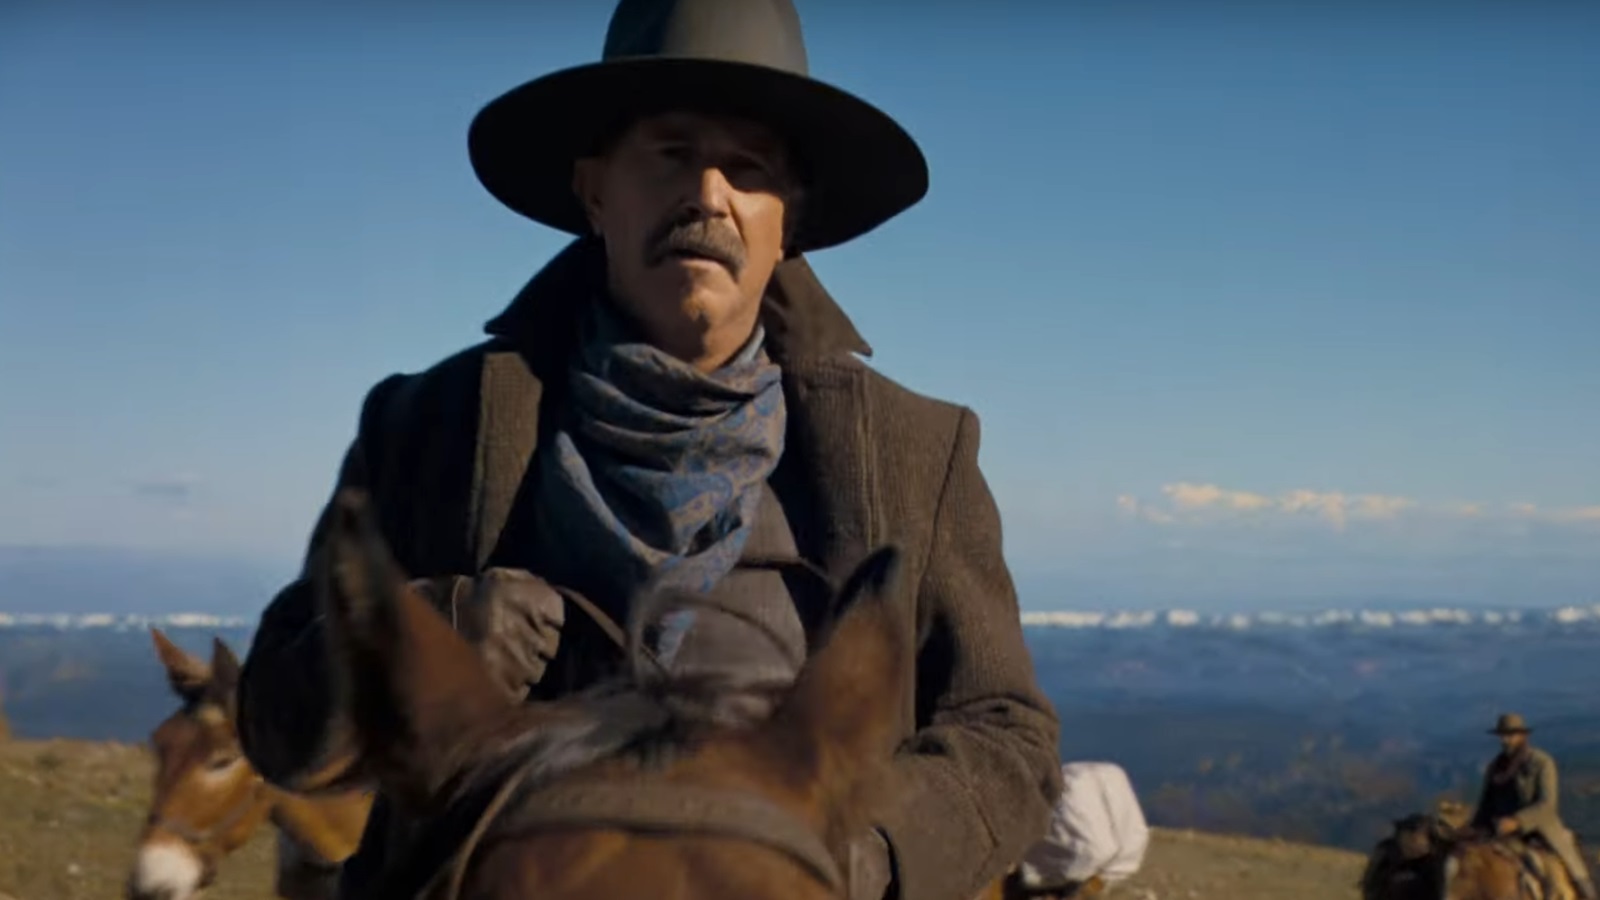 Horizon: il trailer del nuovo western di Kevin Costner anticipa la storia al centro del film